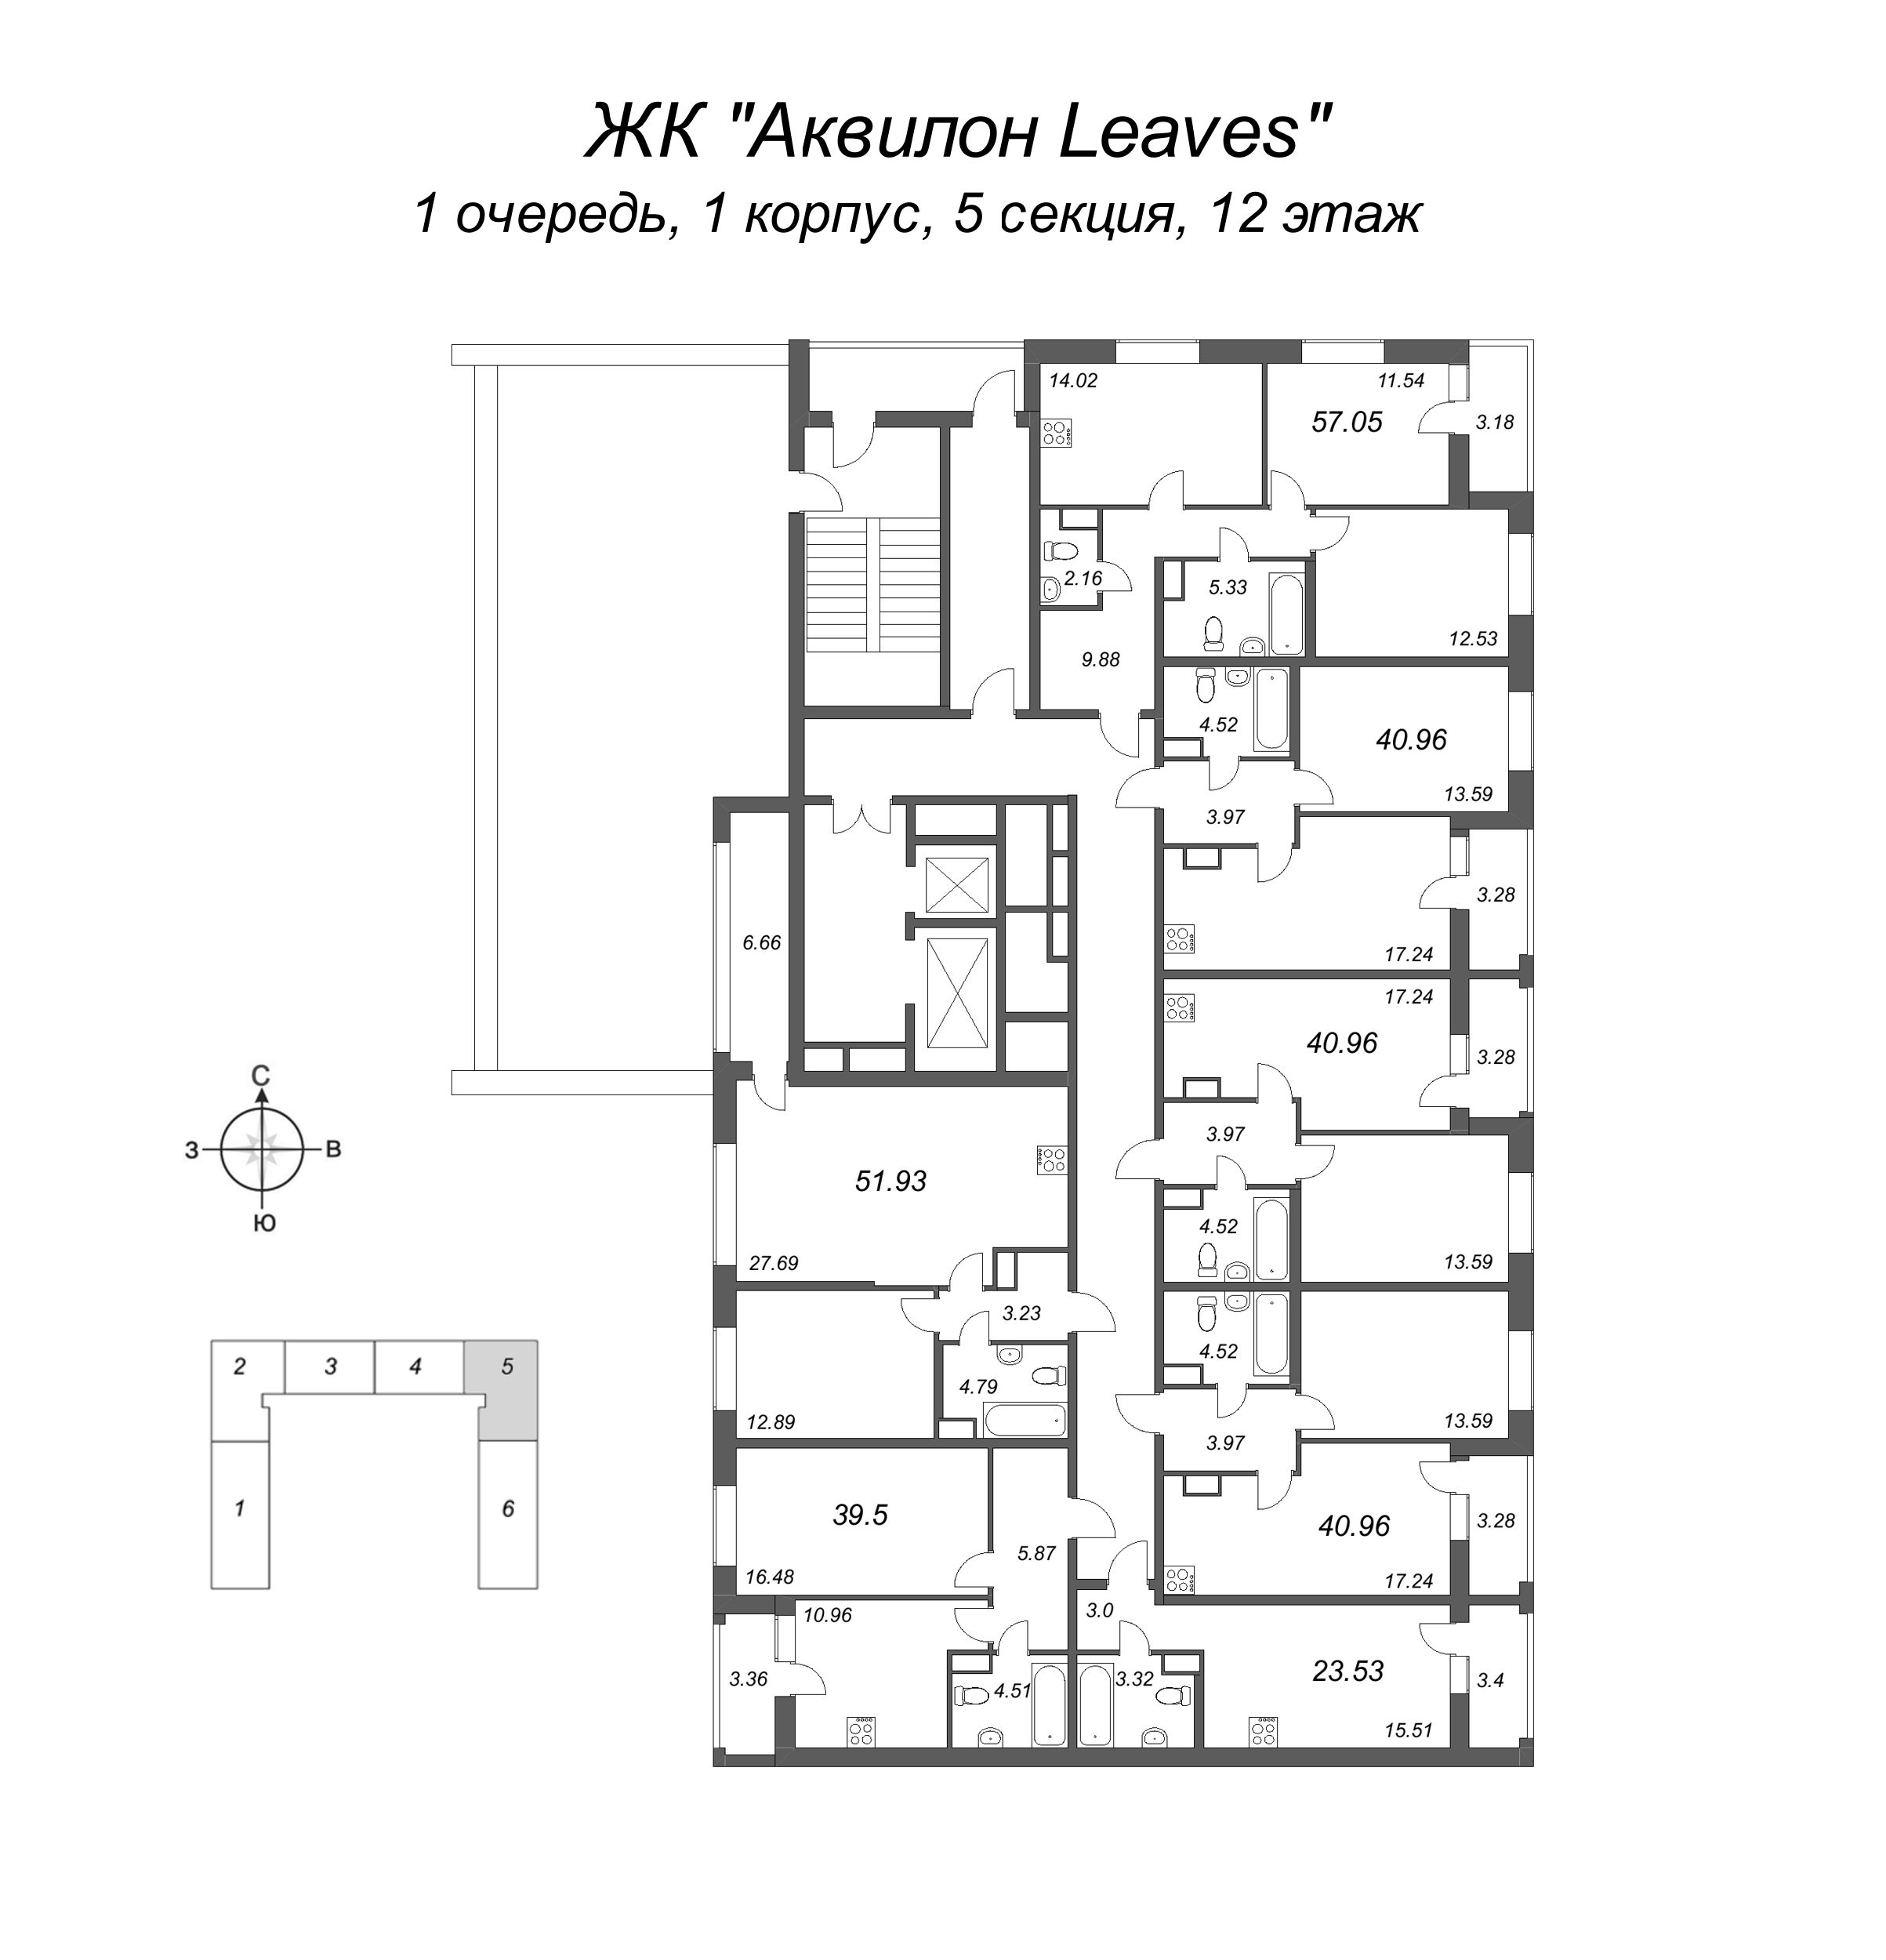 Квартира-студия, 23.53 м² в ЖК "Аквилон Leaves" - планировка этажа